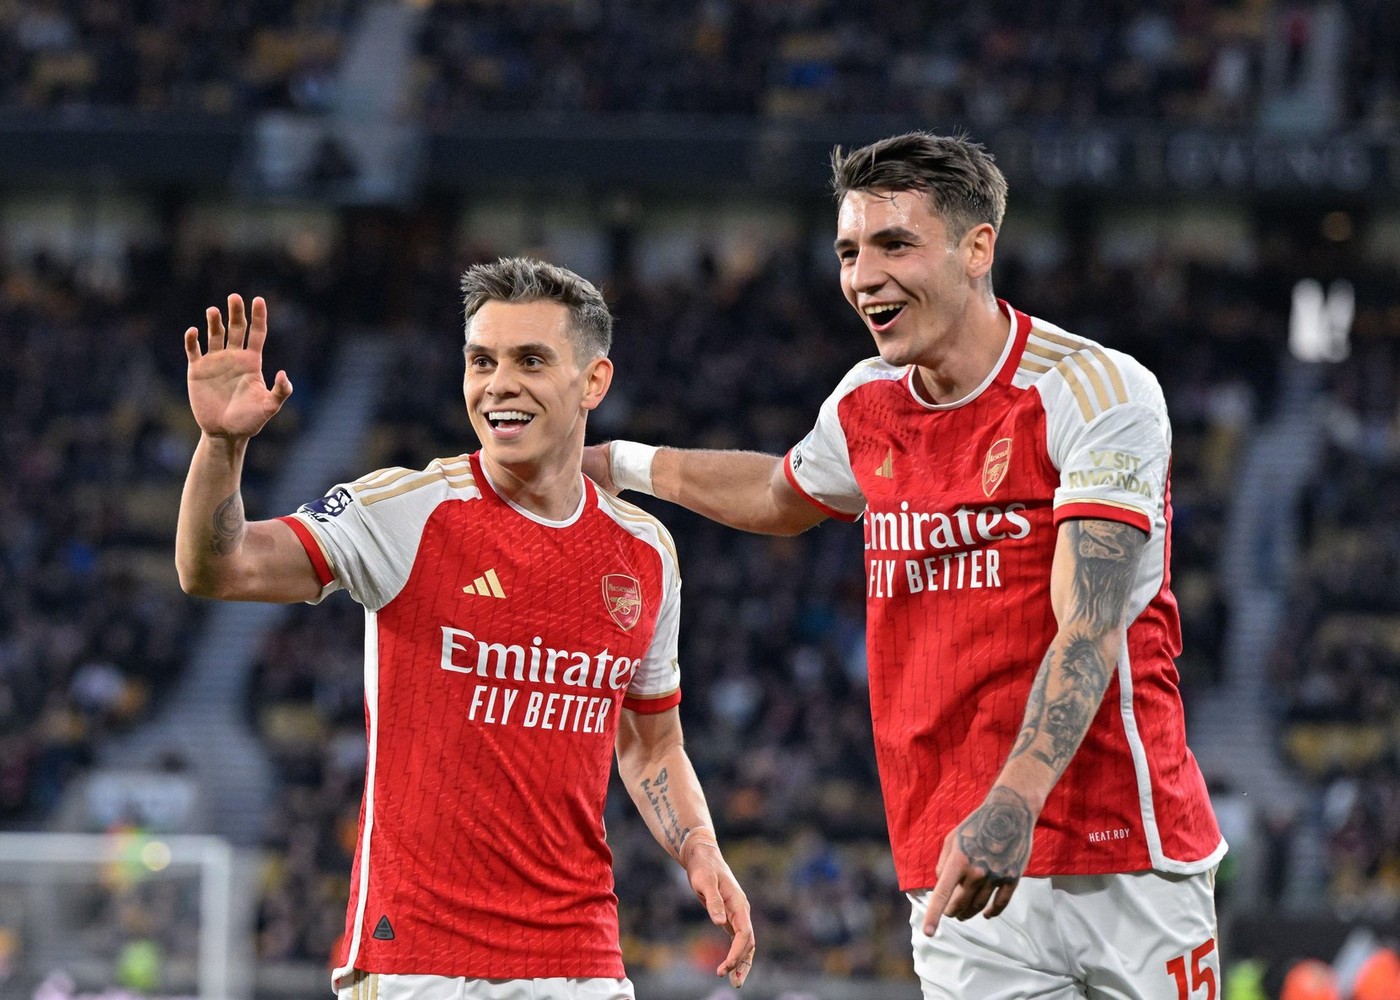 Arsenal - Chelsea 1-0, ACUM, pe Digi Sport 1. Deschidere rapidă de scor în derby-ul Londrei